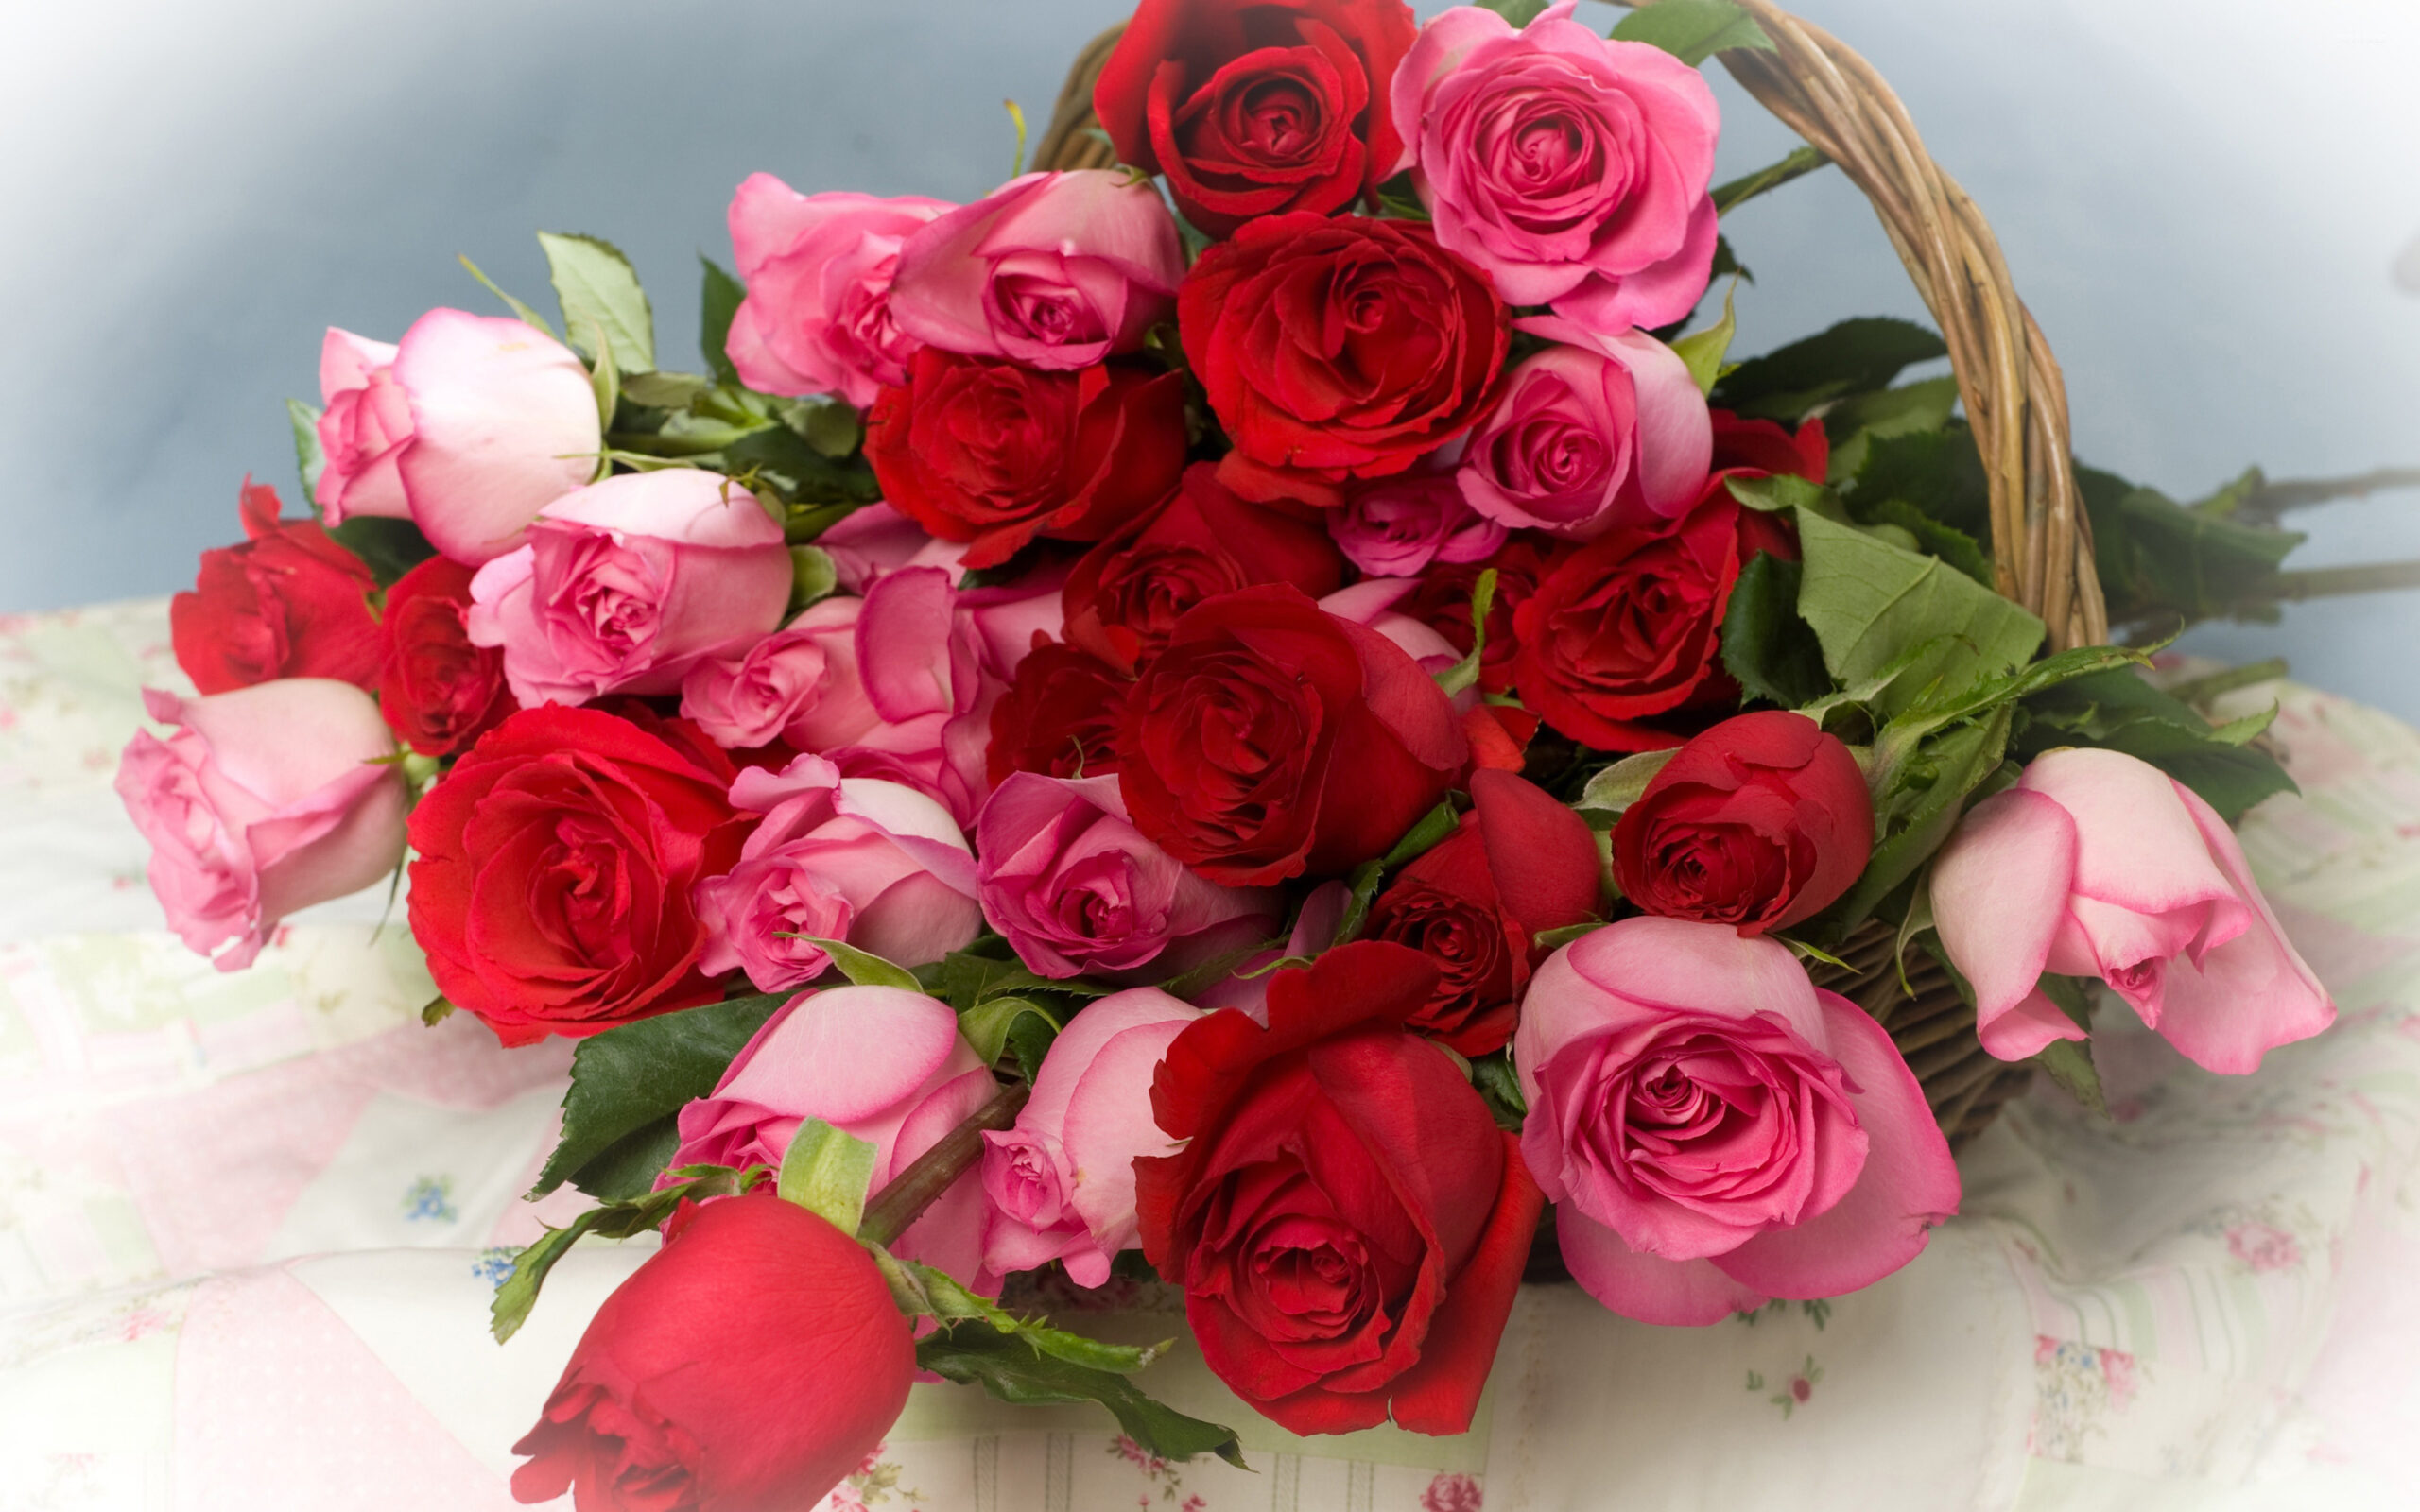 gambar bunga mawar warna pink dan merah